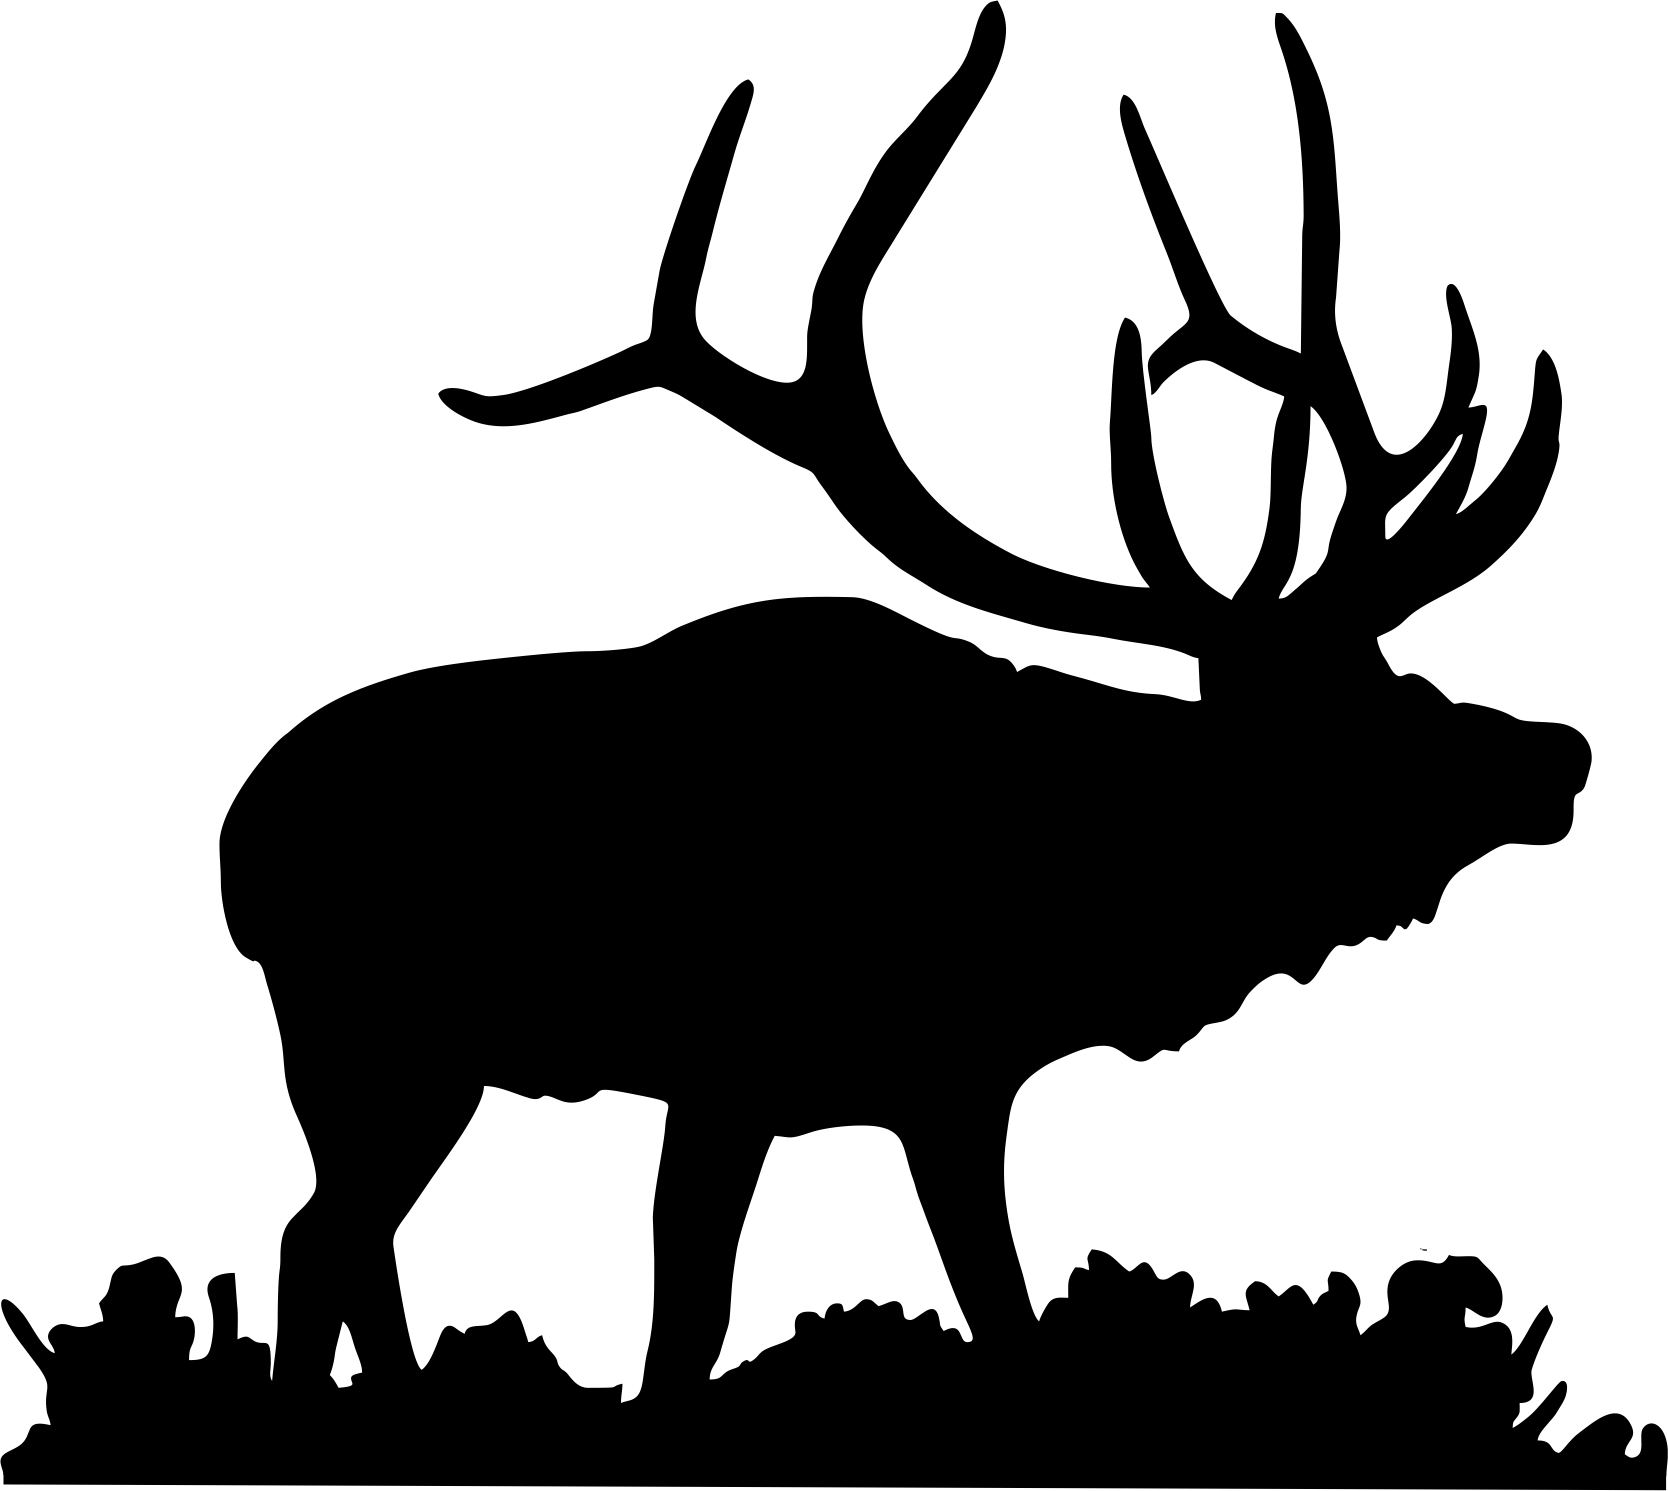 Bulletin Resources CaliforniaHawaii Elks Association